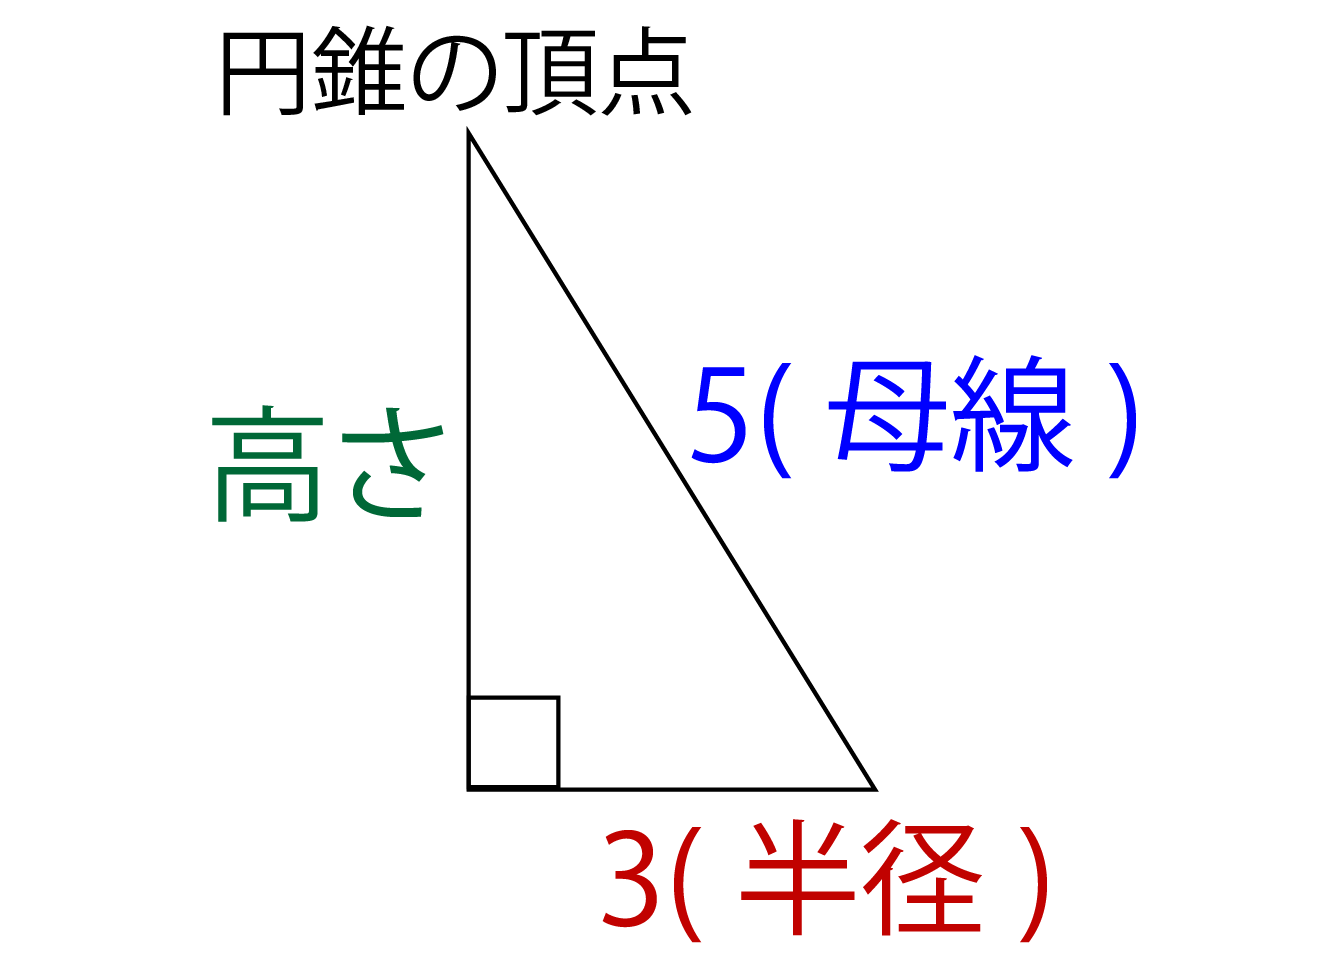 円錐の表面積や体積の求め方 すぐ分かる方法を慶応生が解説 高校生